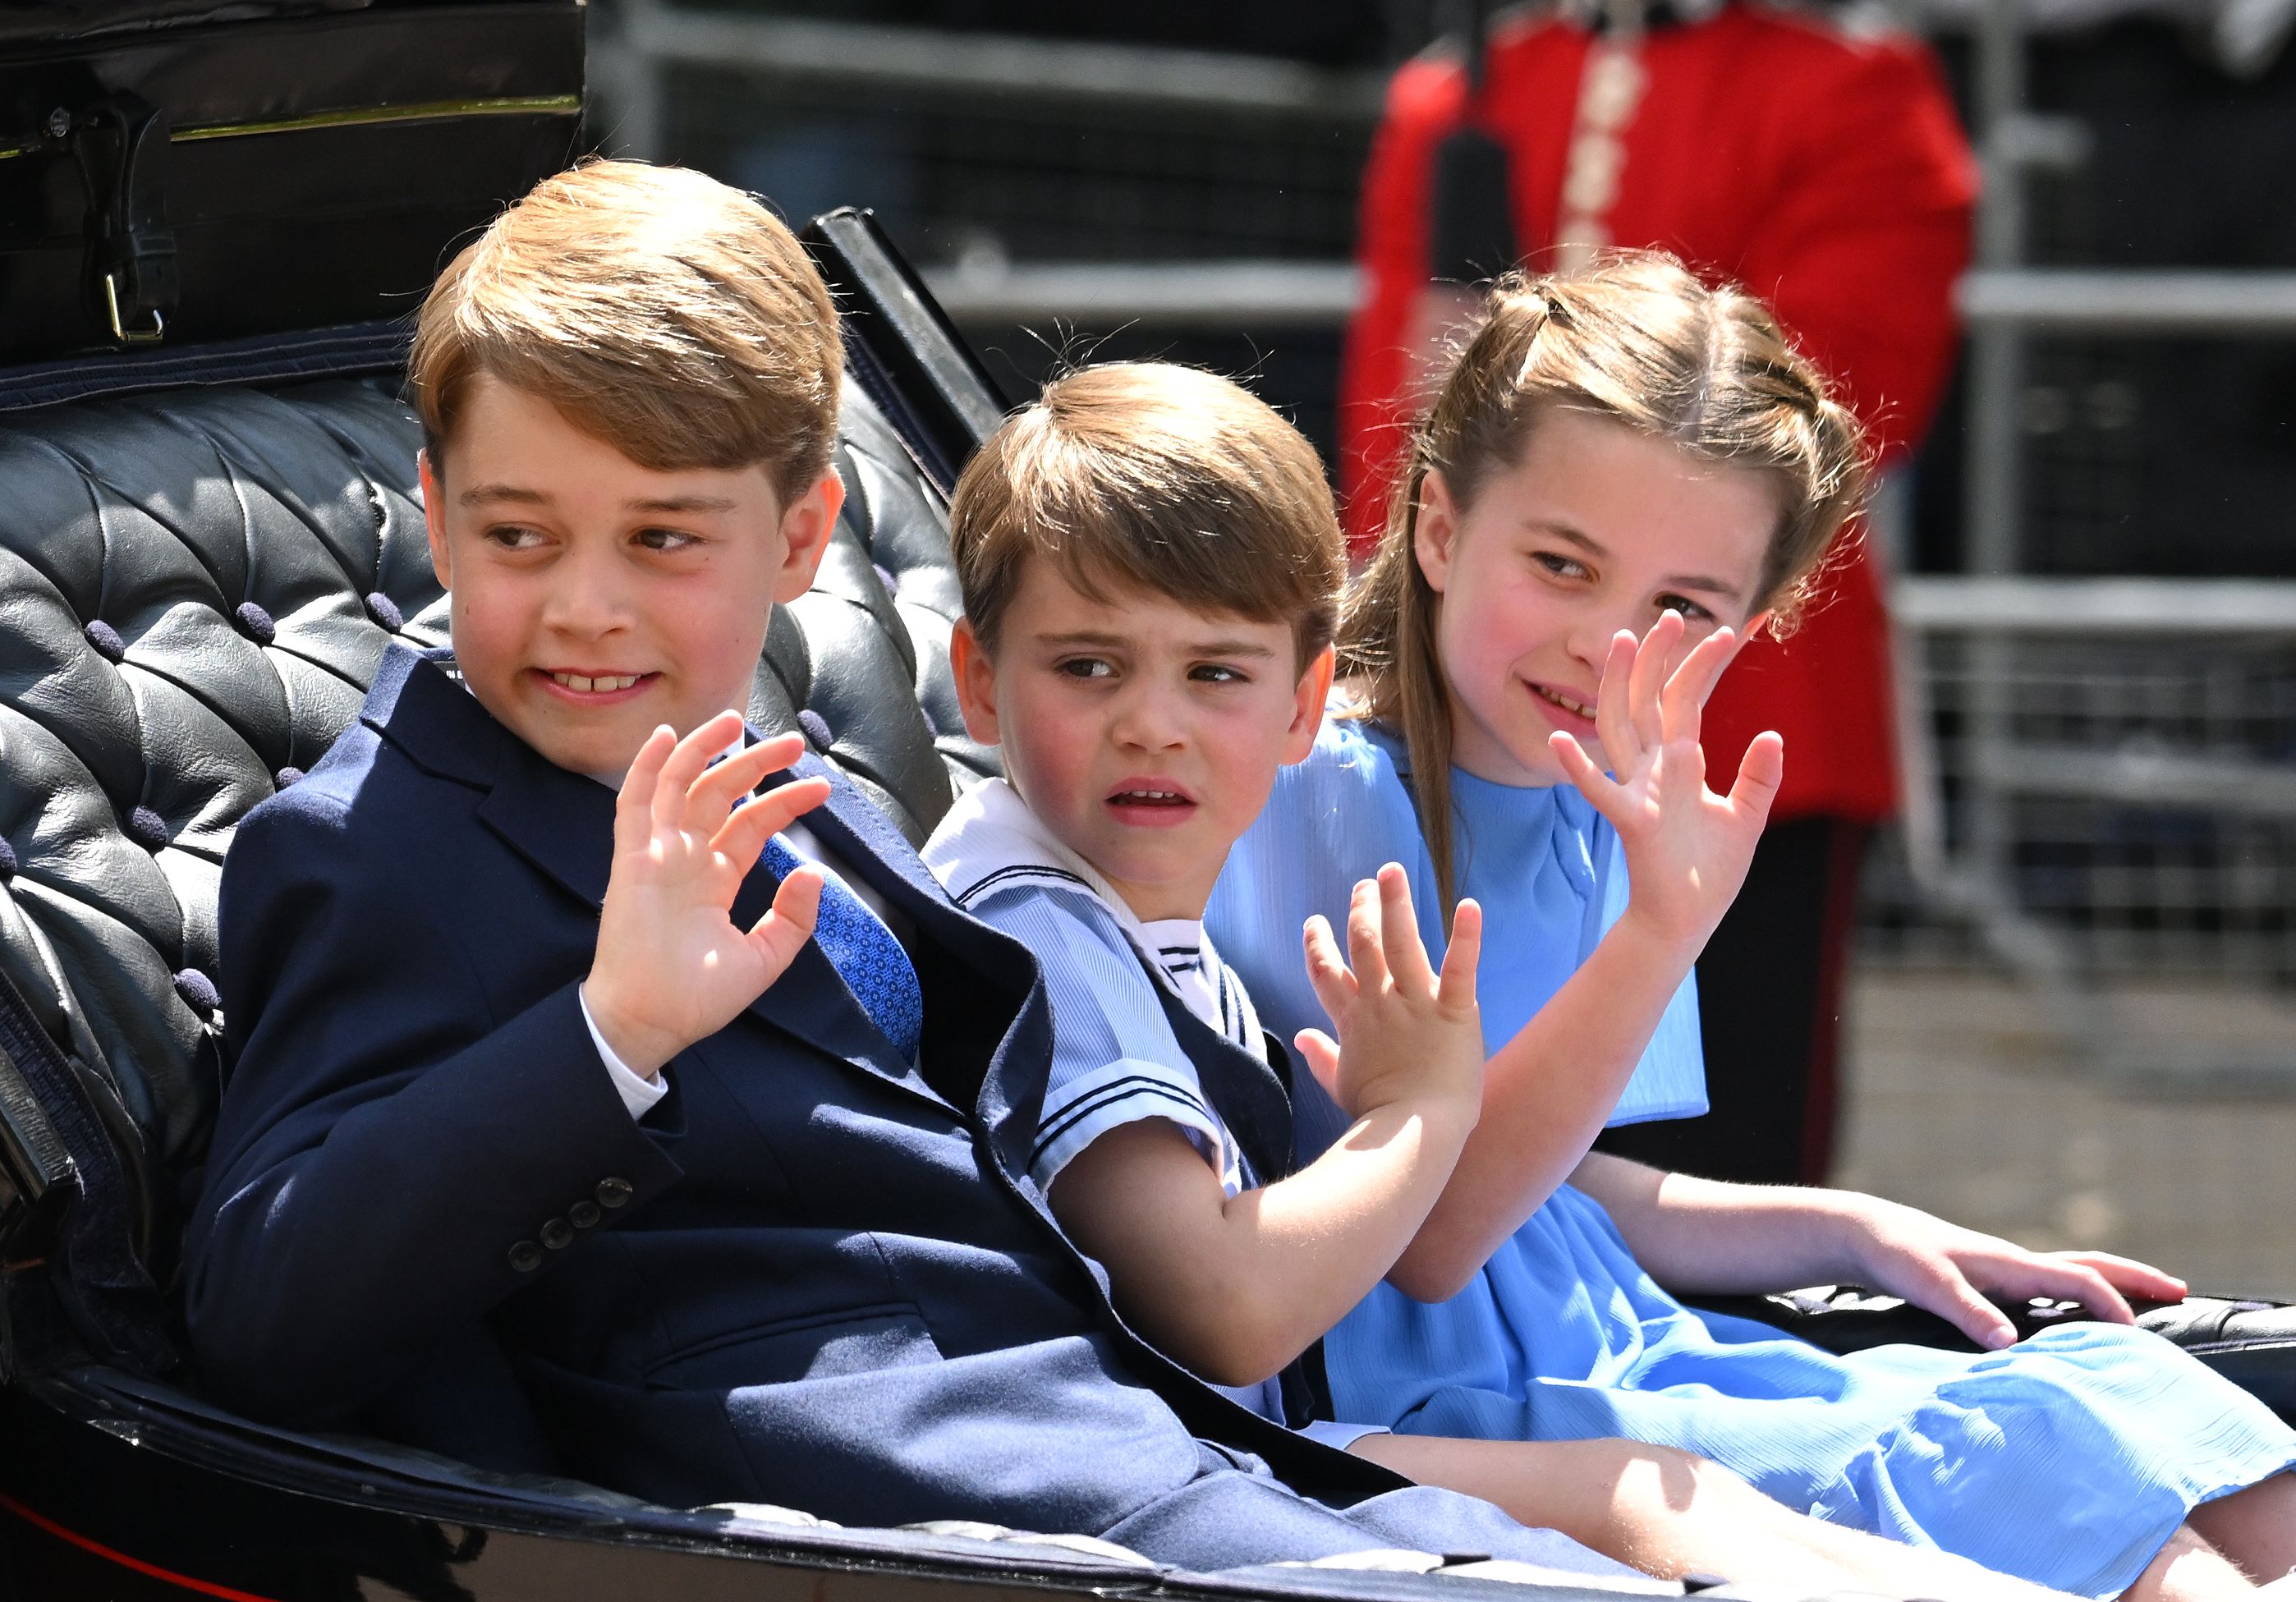 Three of the queen's grandchildren